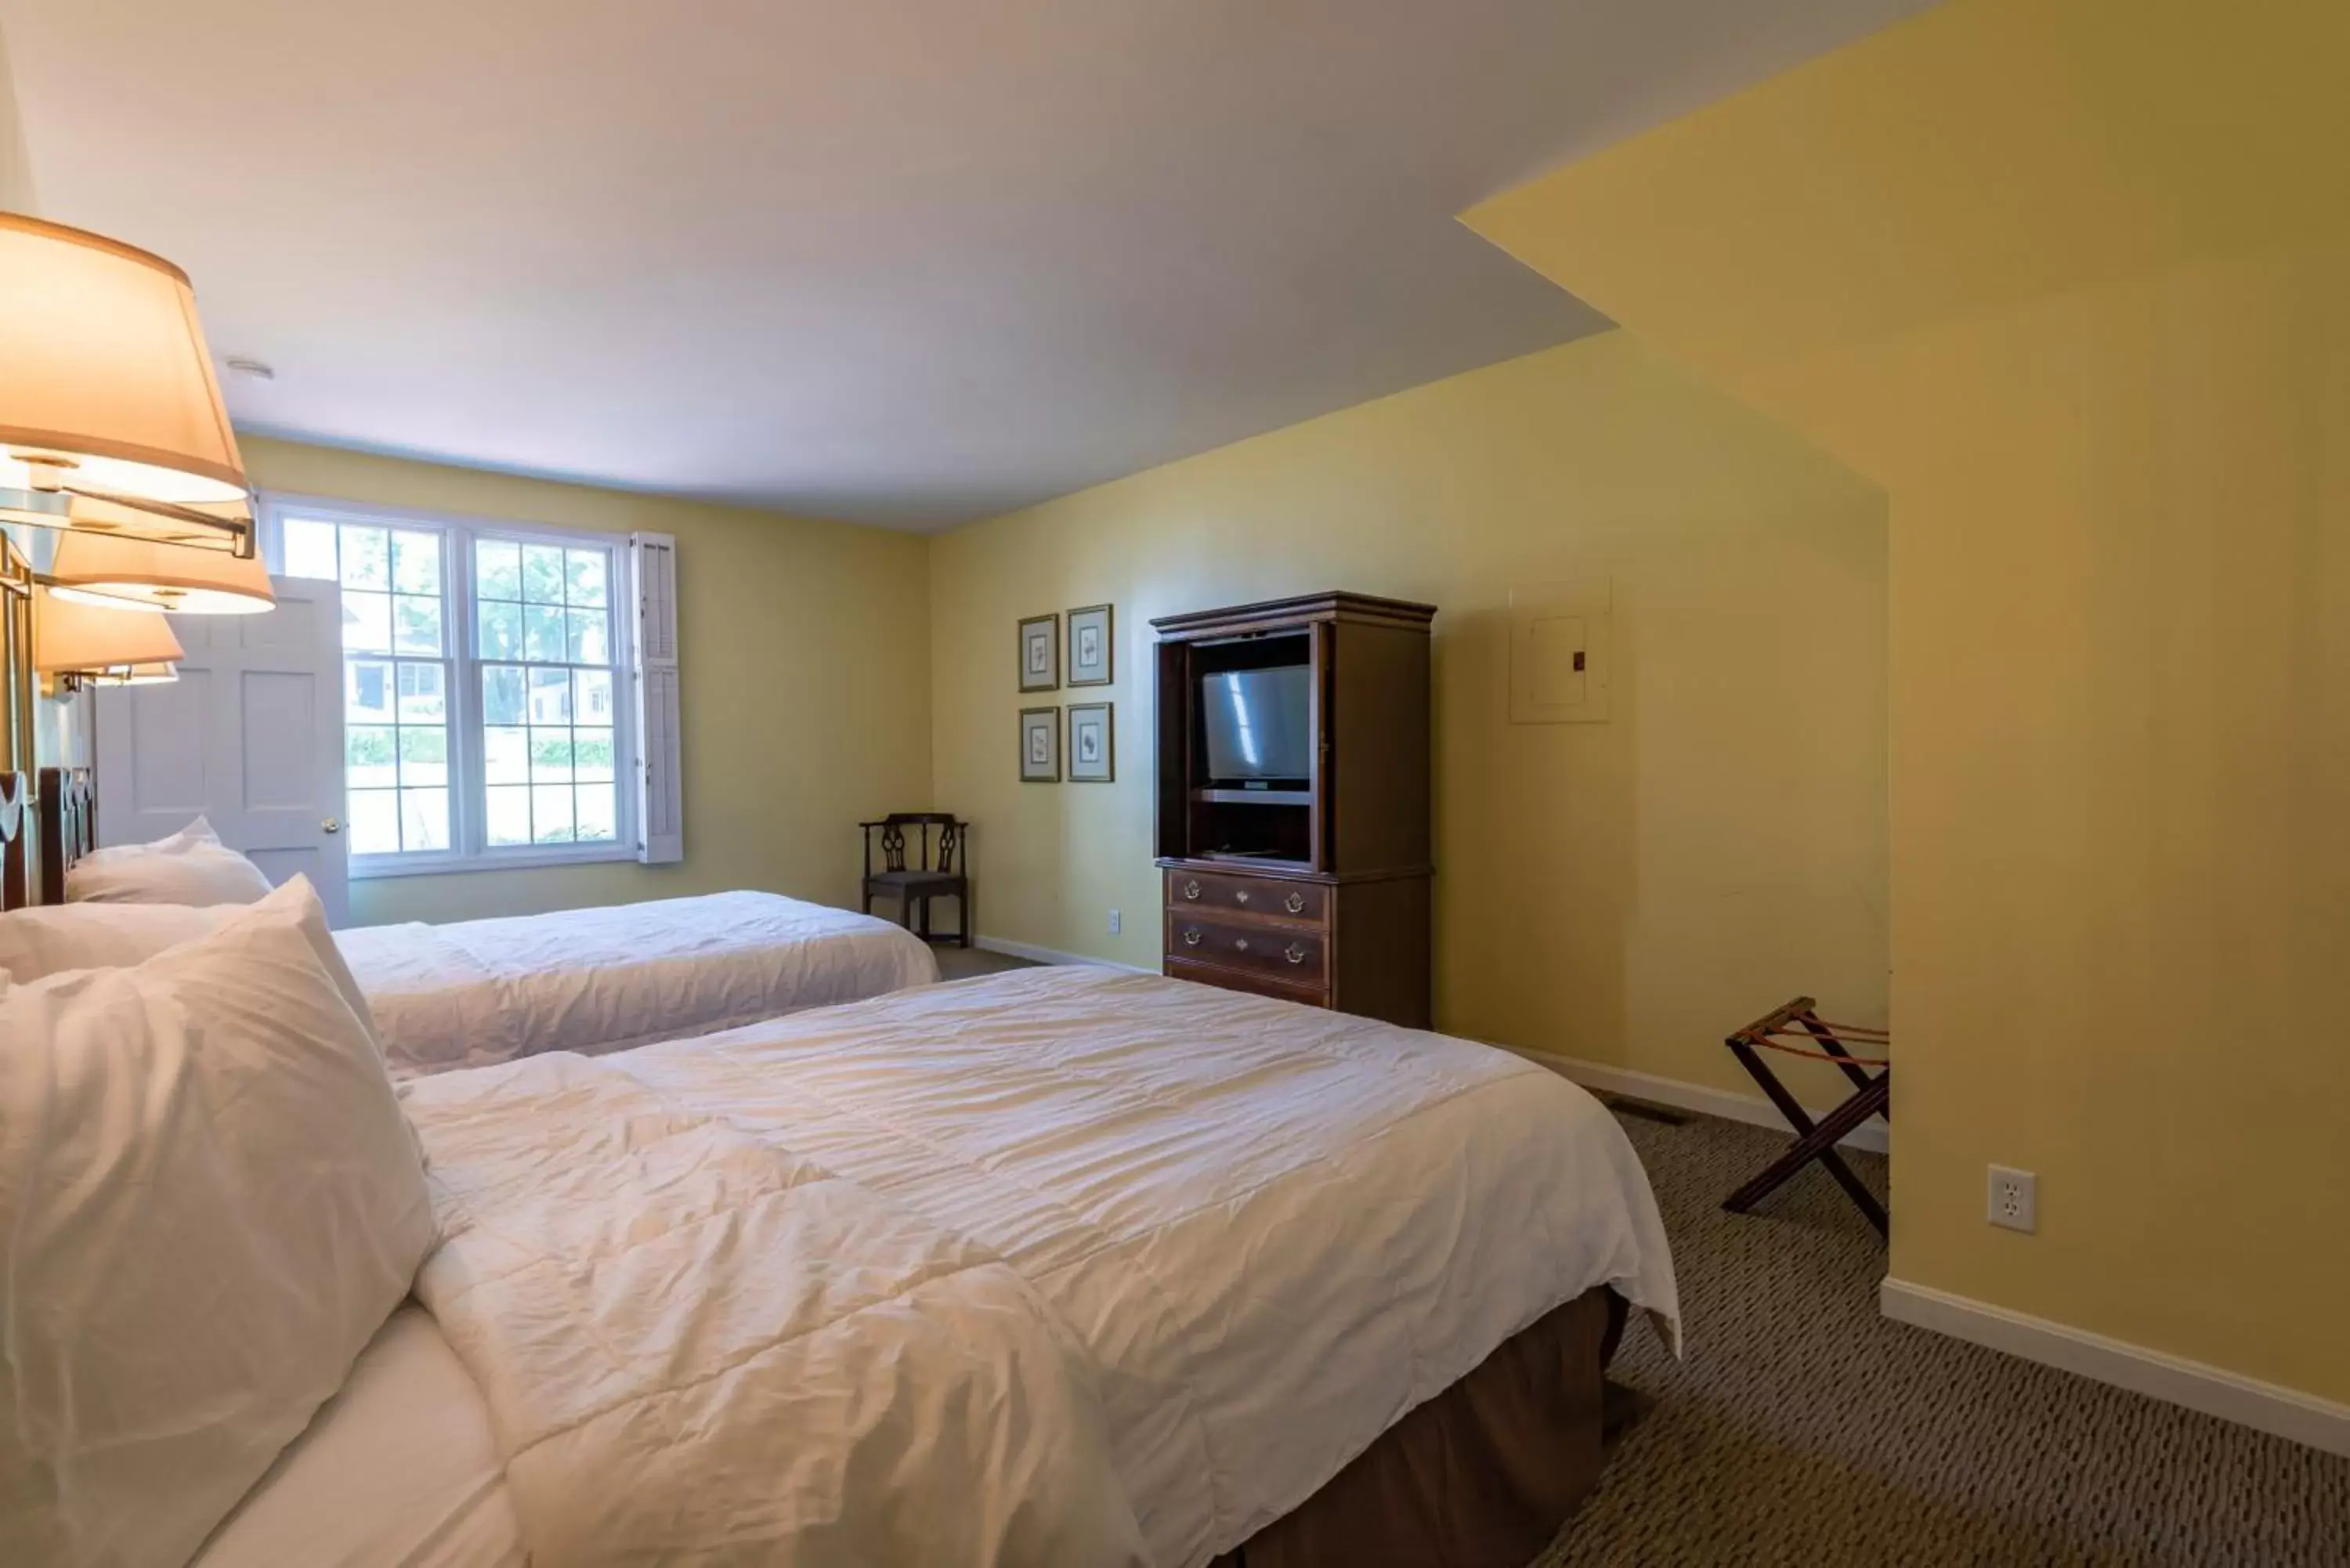 Bedroom in Century Suites Hotel